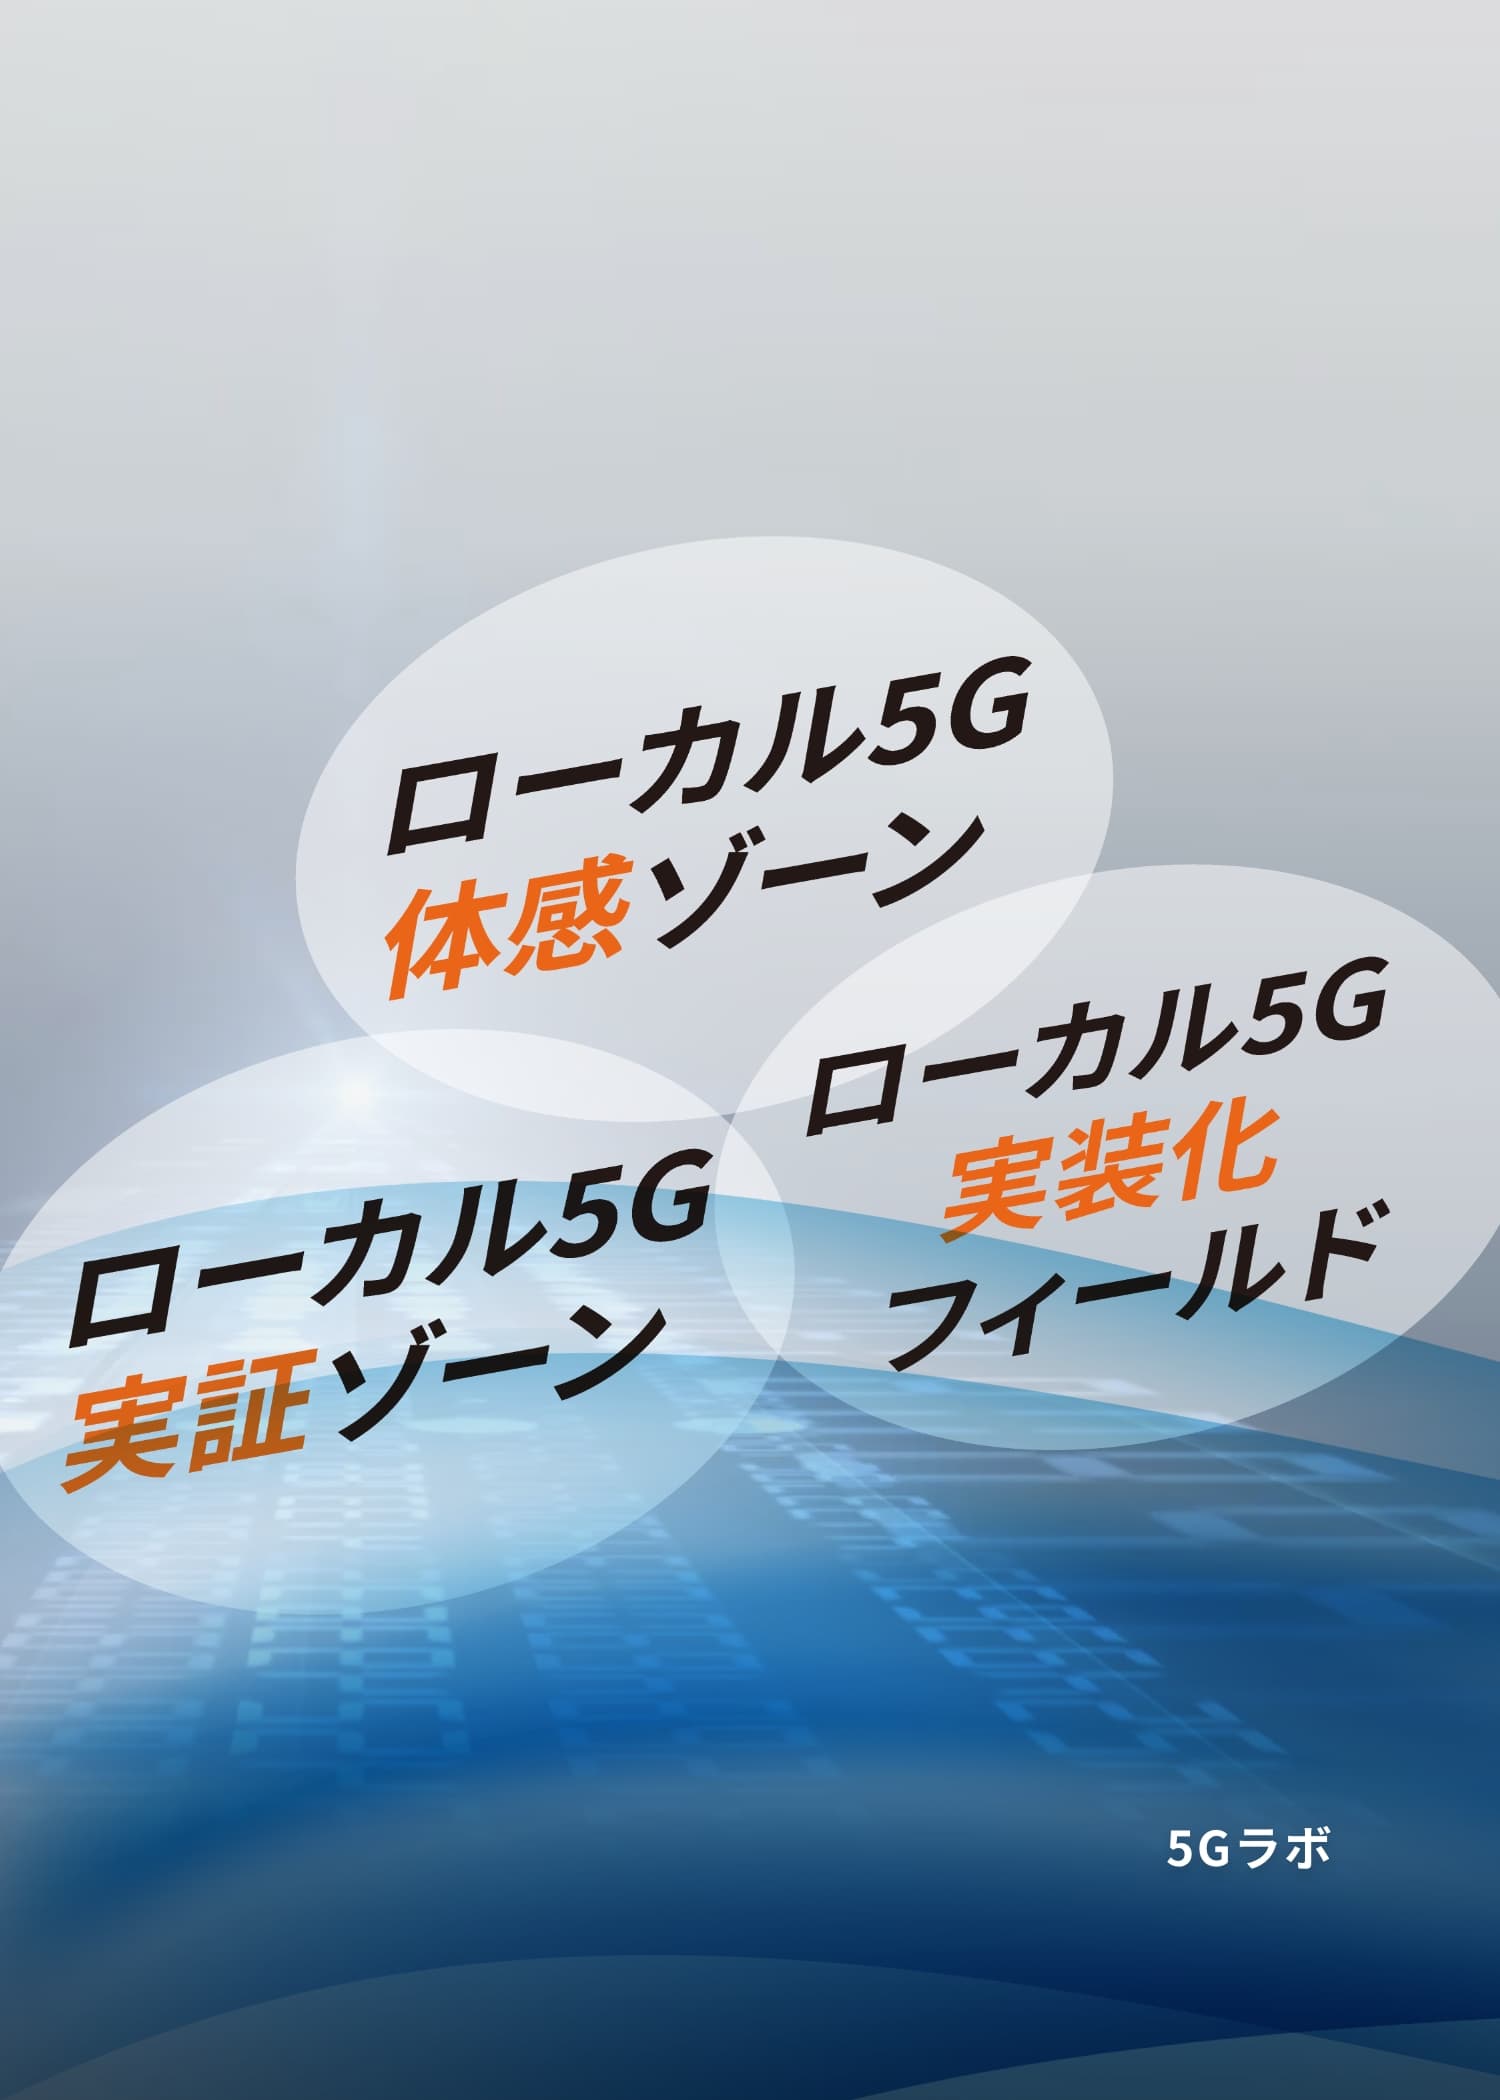 新たな価値を創出する愛媛5G